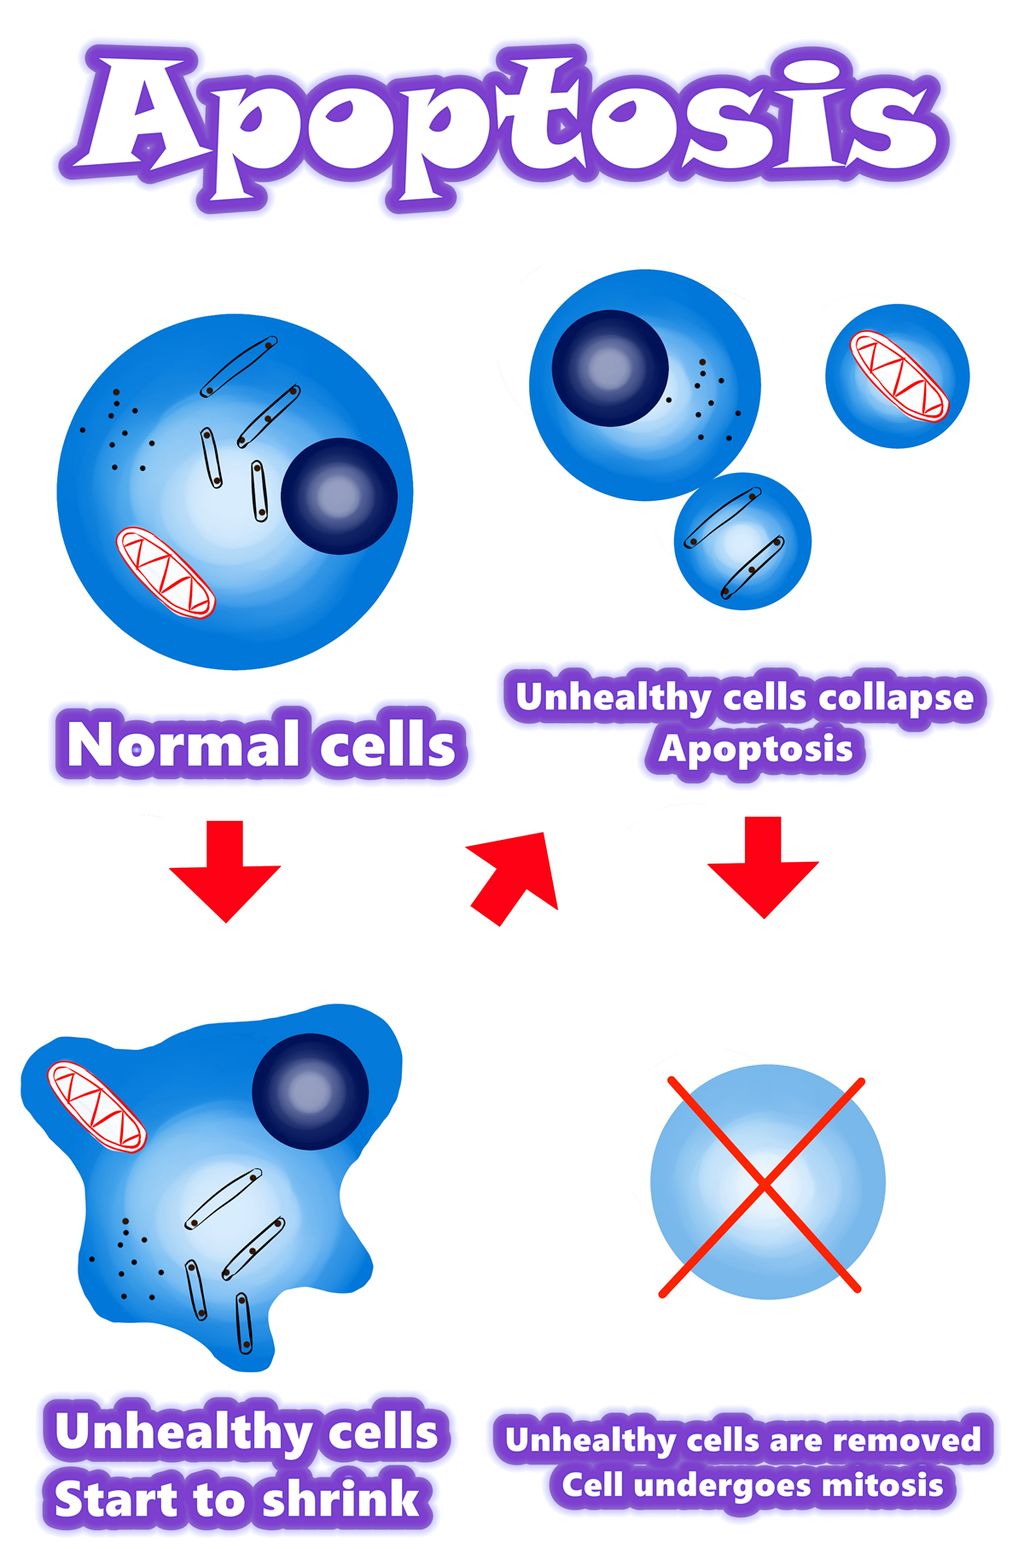 Solamargine | De beste oplossing voor kankercellen | Apoptose versus kankercellen | Apoptose versus abnormale cellen | Apoptose versus gemuteerde cellen | Overzicht / Samenvatting / Mechanisme van apoptose